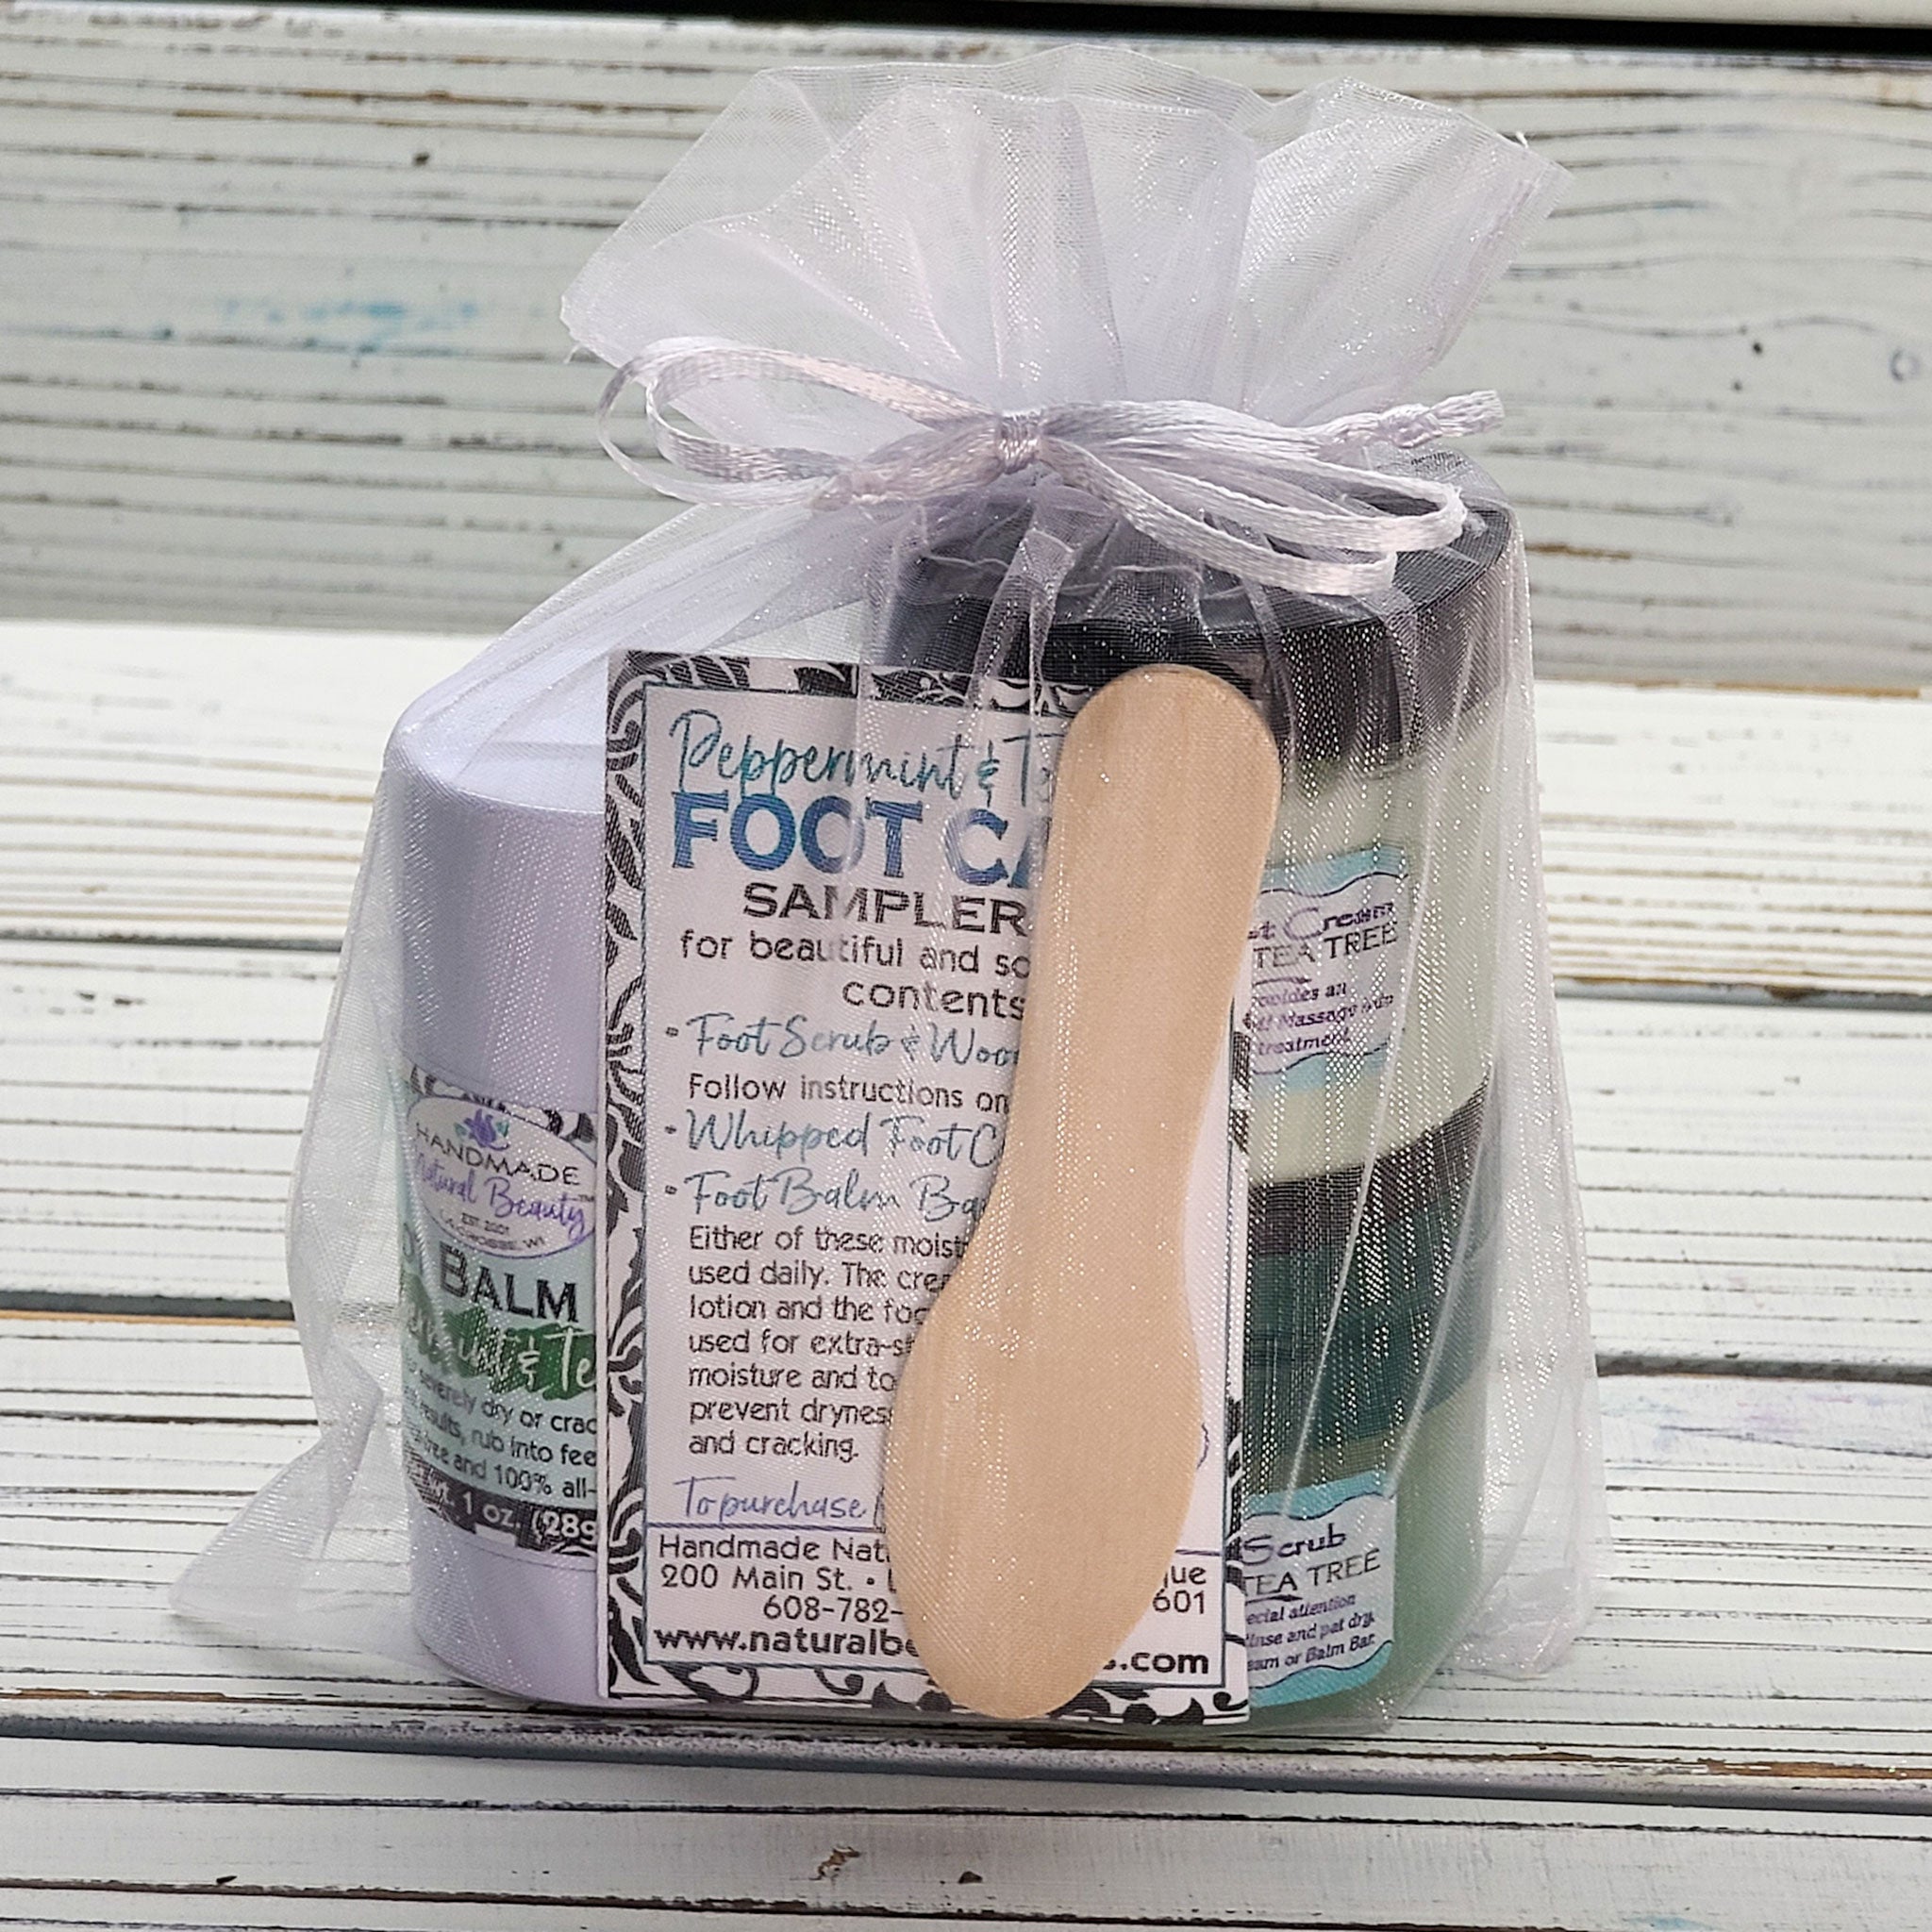 Natural Foot Care | Spa Foot Care Sampler Kit